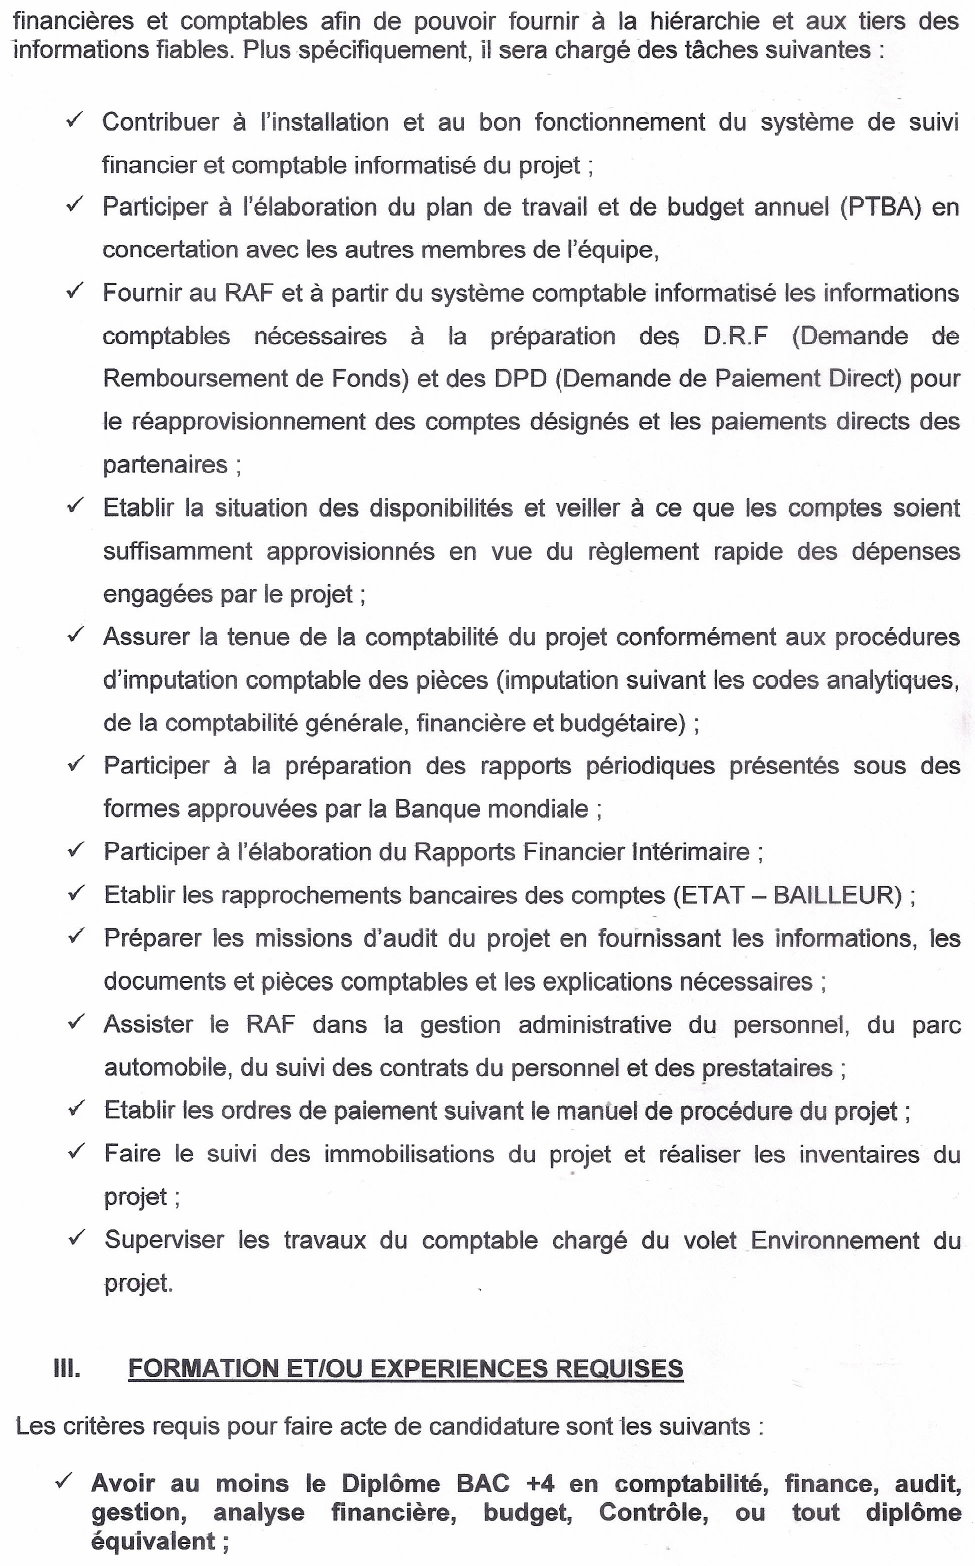 SOLLICITATION DE MANIFESTATION D'INTERET POUR LE RECRUTEMENT D'UN CHEF COMPTABLE EN FAVEUR DU PGRNME | PAGE 2